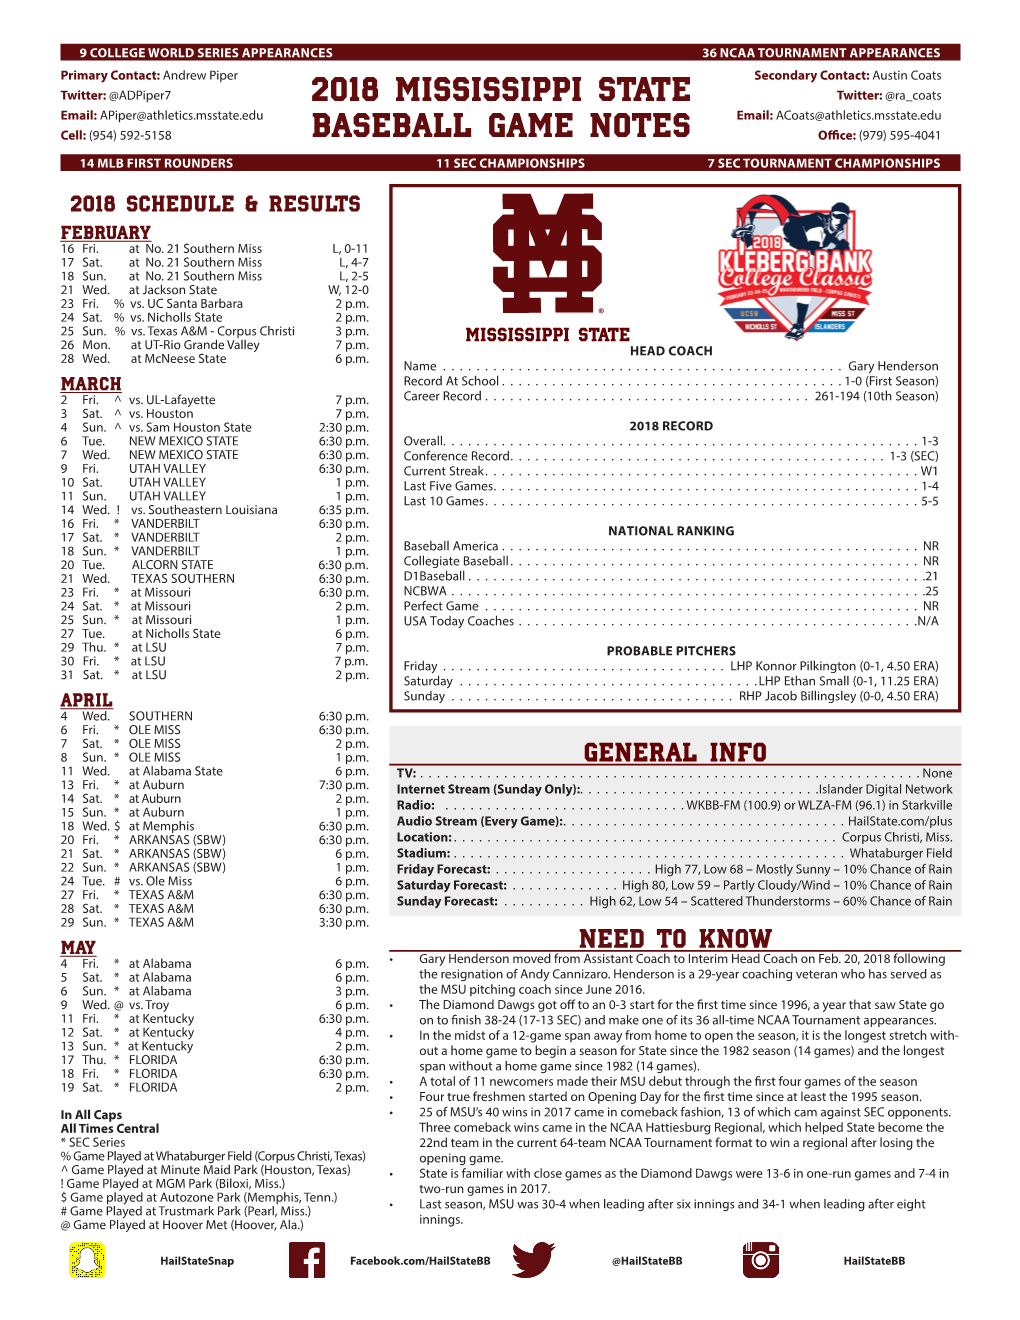 2018 Mississippi State Baseball Game Notes